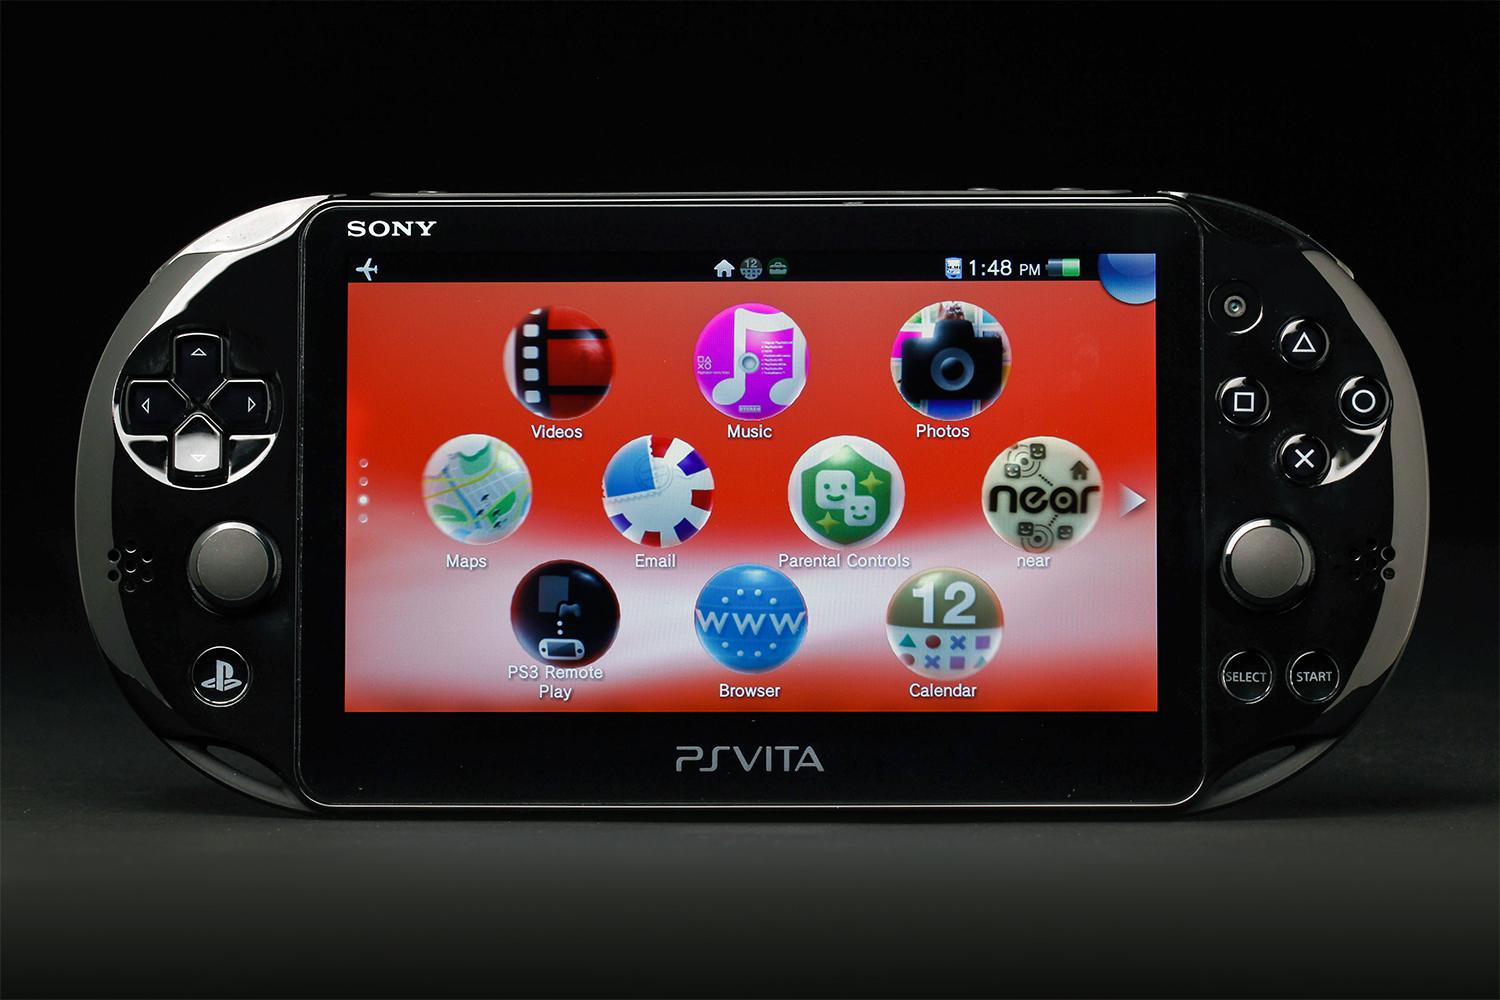 PS Vita Slim review